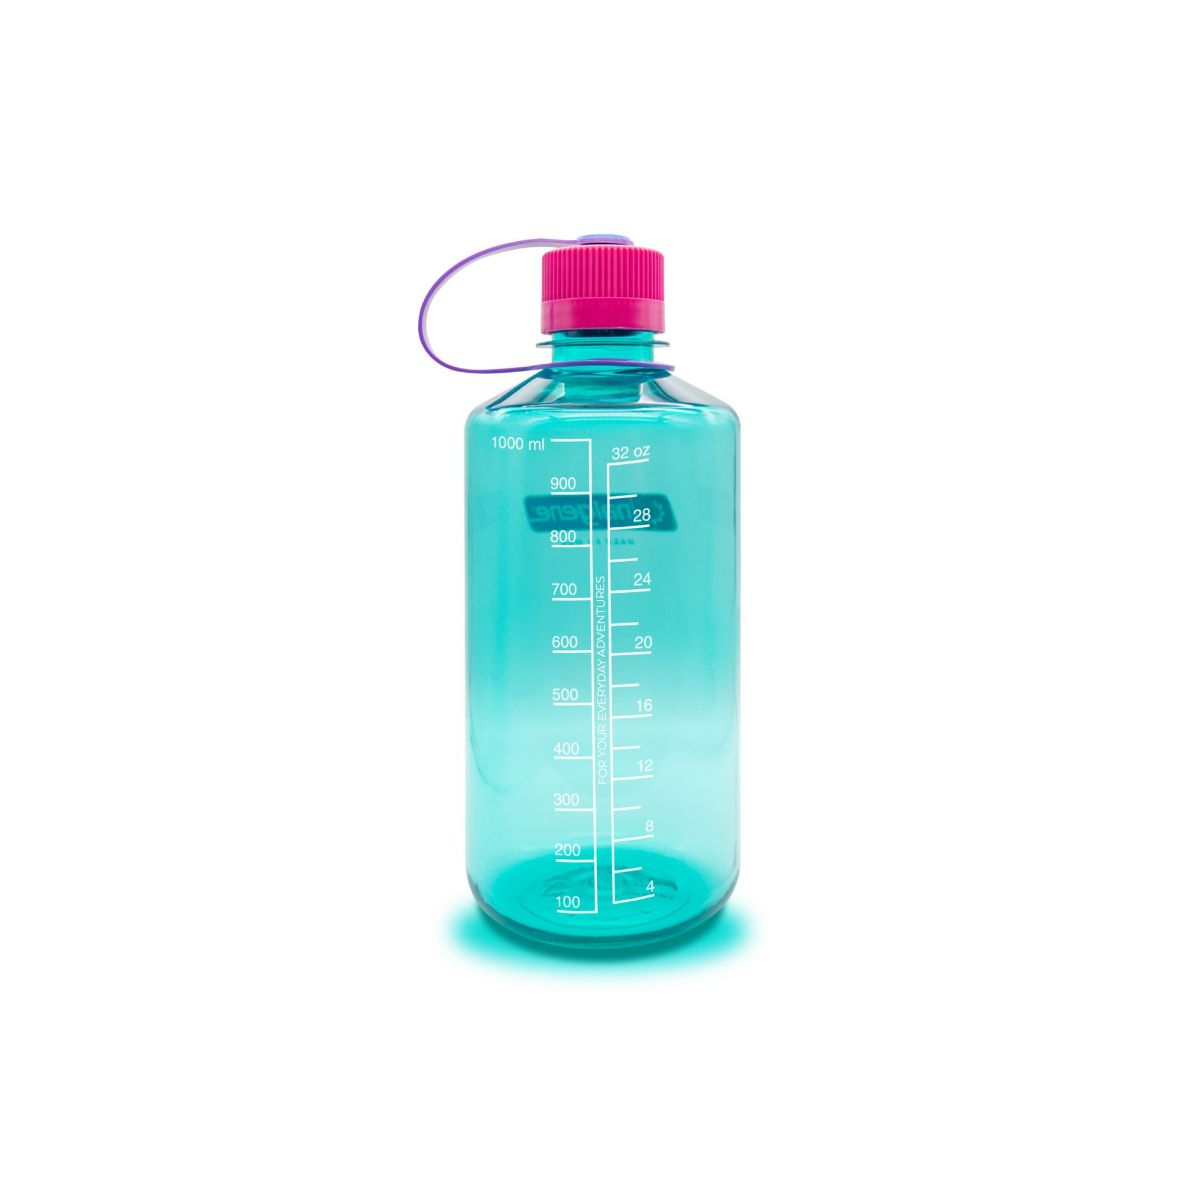 turkis drikkeflaske i BPA-fri plast. Flasken rommer 1 liter drikke